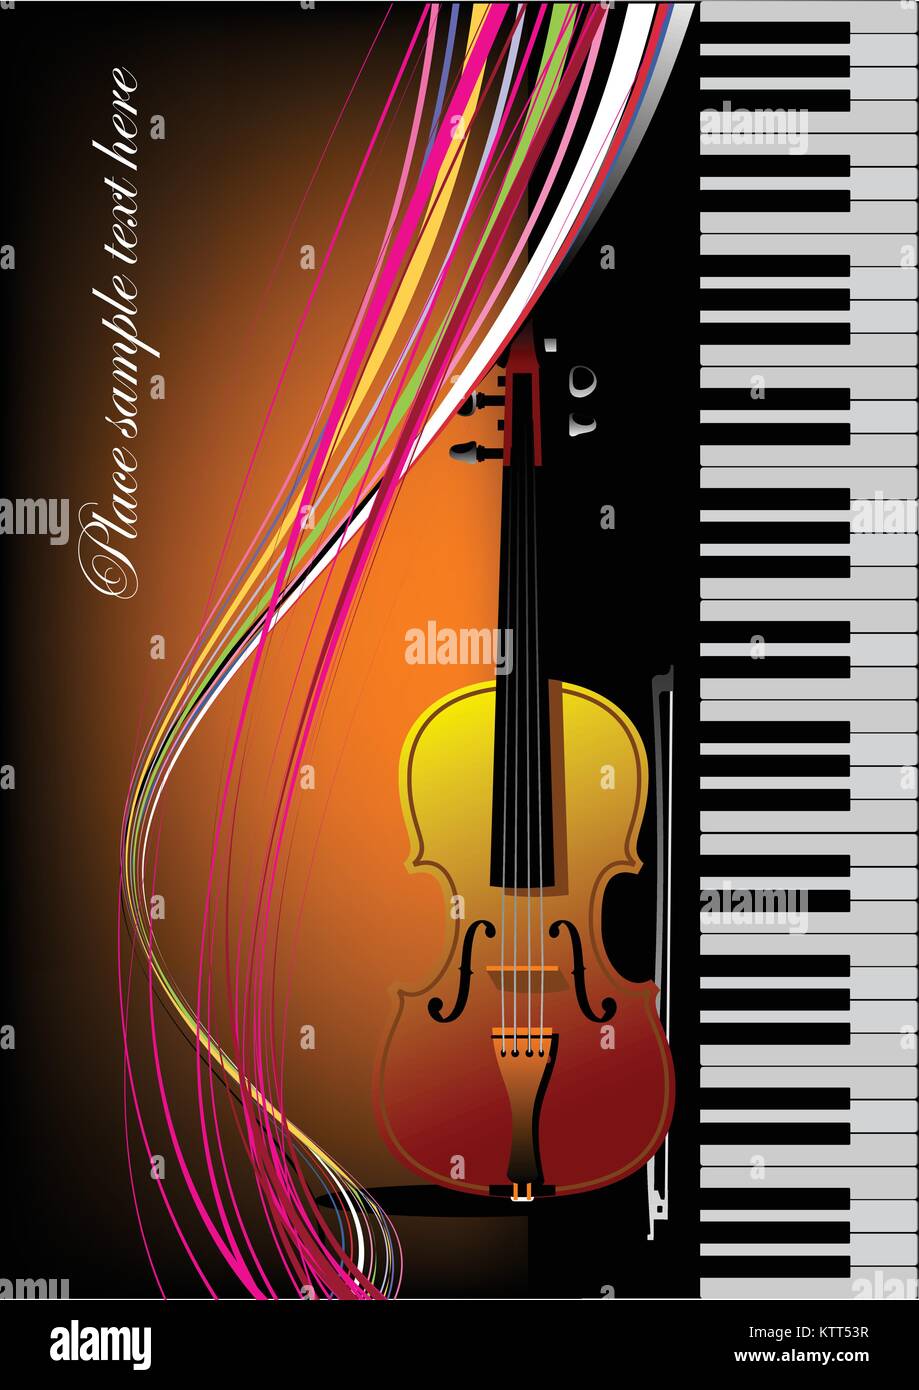 Le piano avec violon. Vector illustration couleur. Couvrir pour réserver Illustration de Vecteur